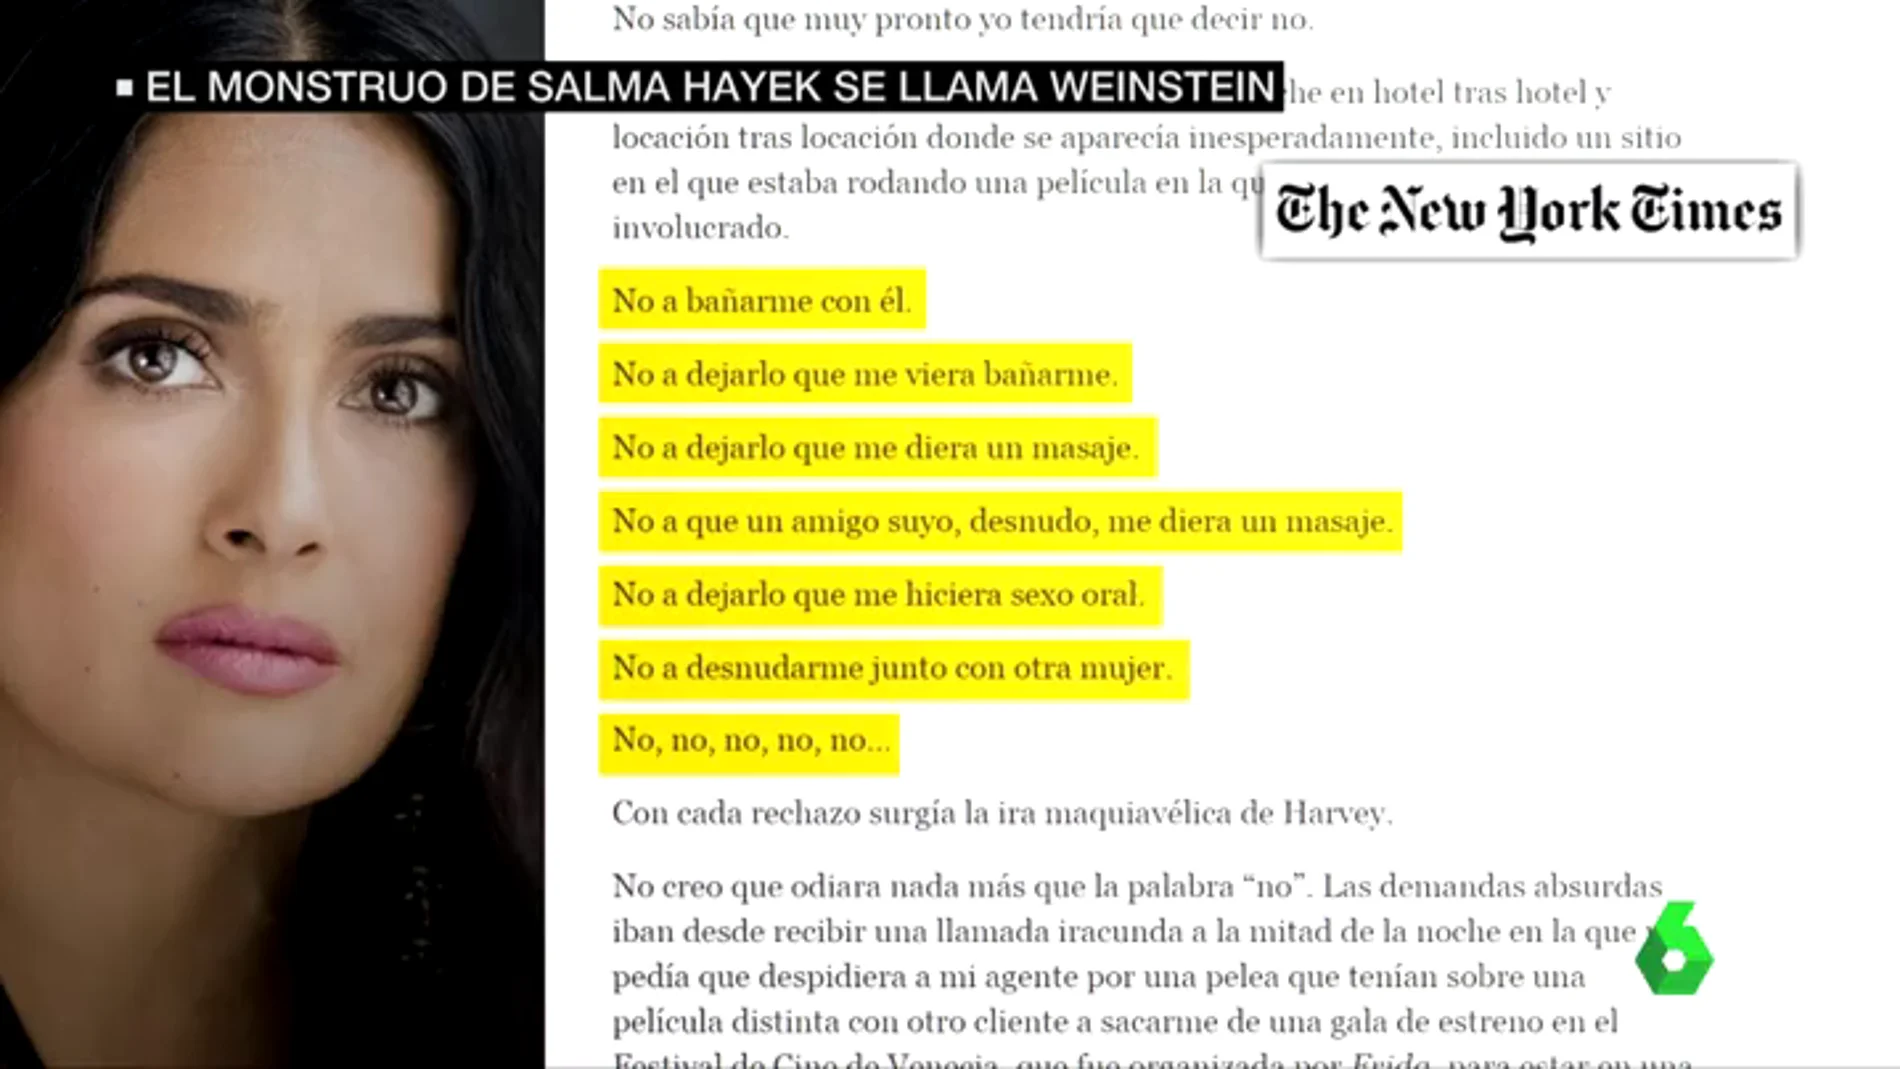 La carta de Salma Hayek denunciando los abusos de Weinstein